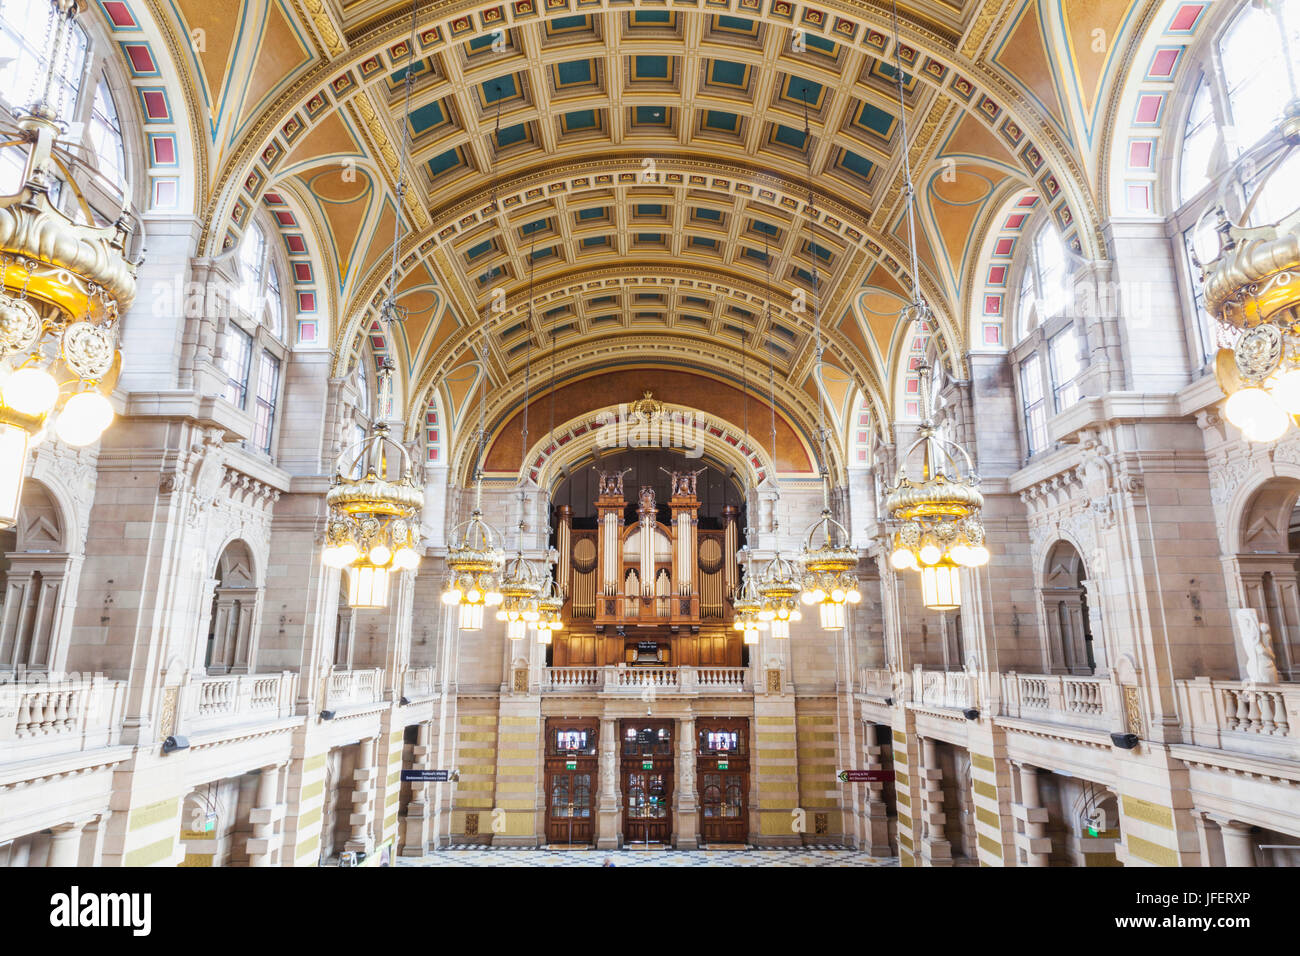 Escocia, Glasgow, Galería de Arte y Museo Kelvingrove, vista interior Foto de stock